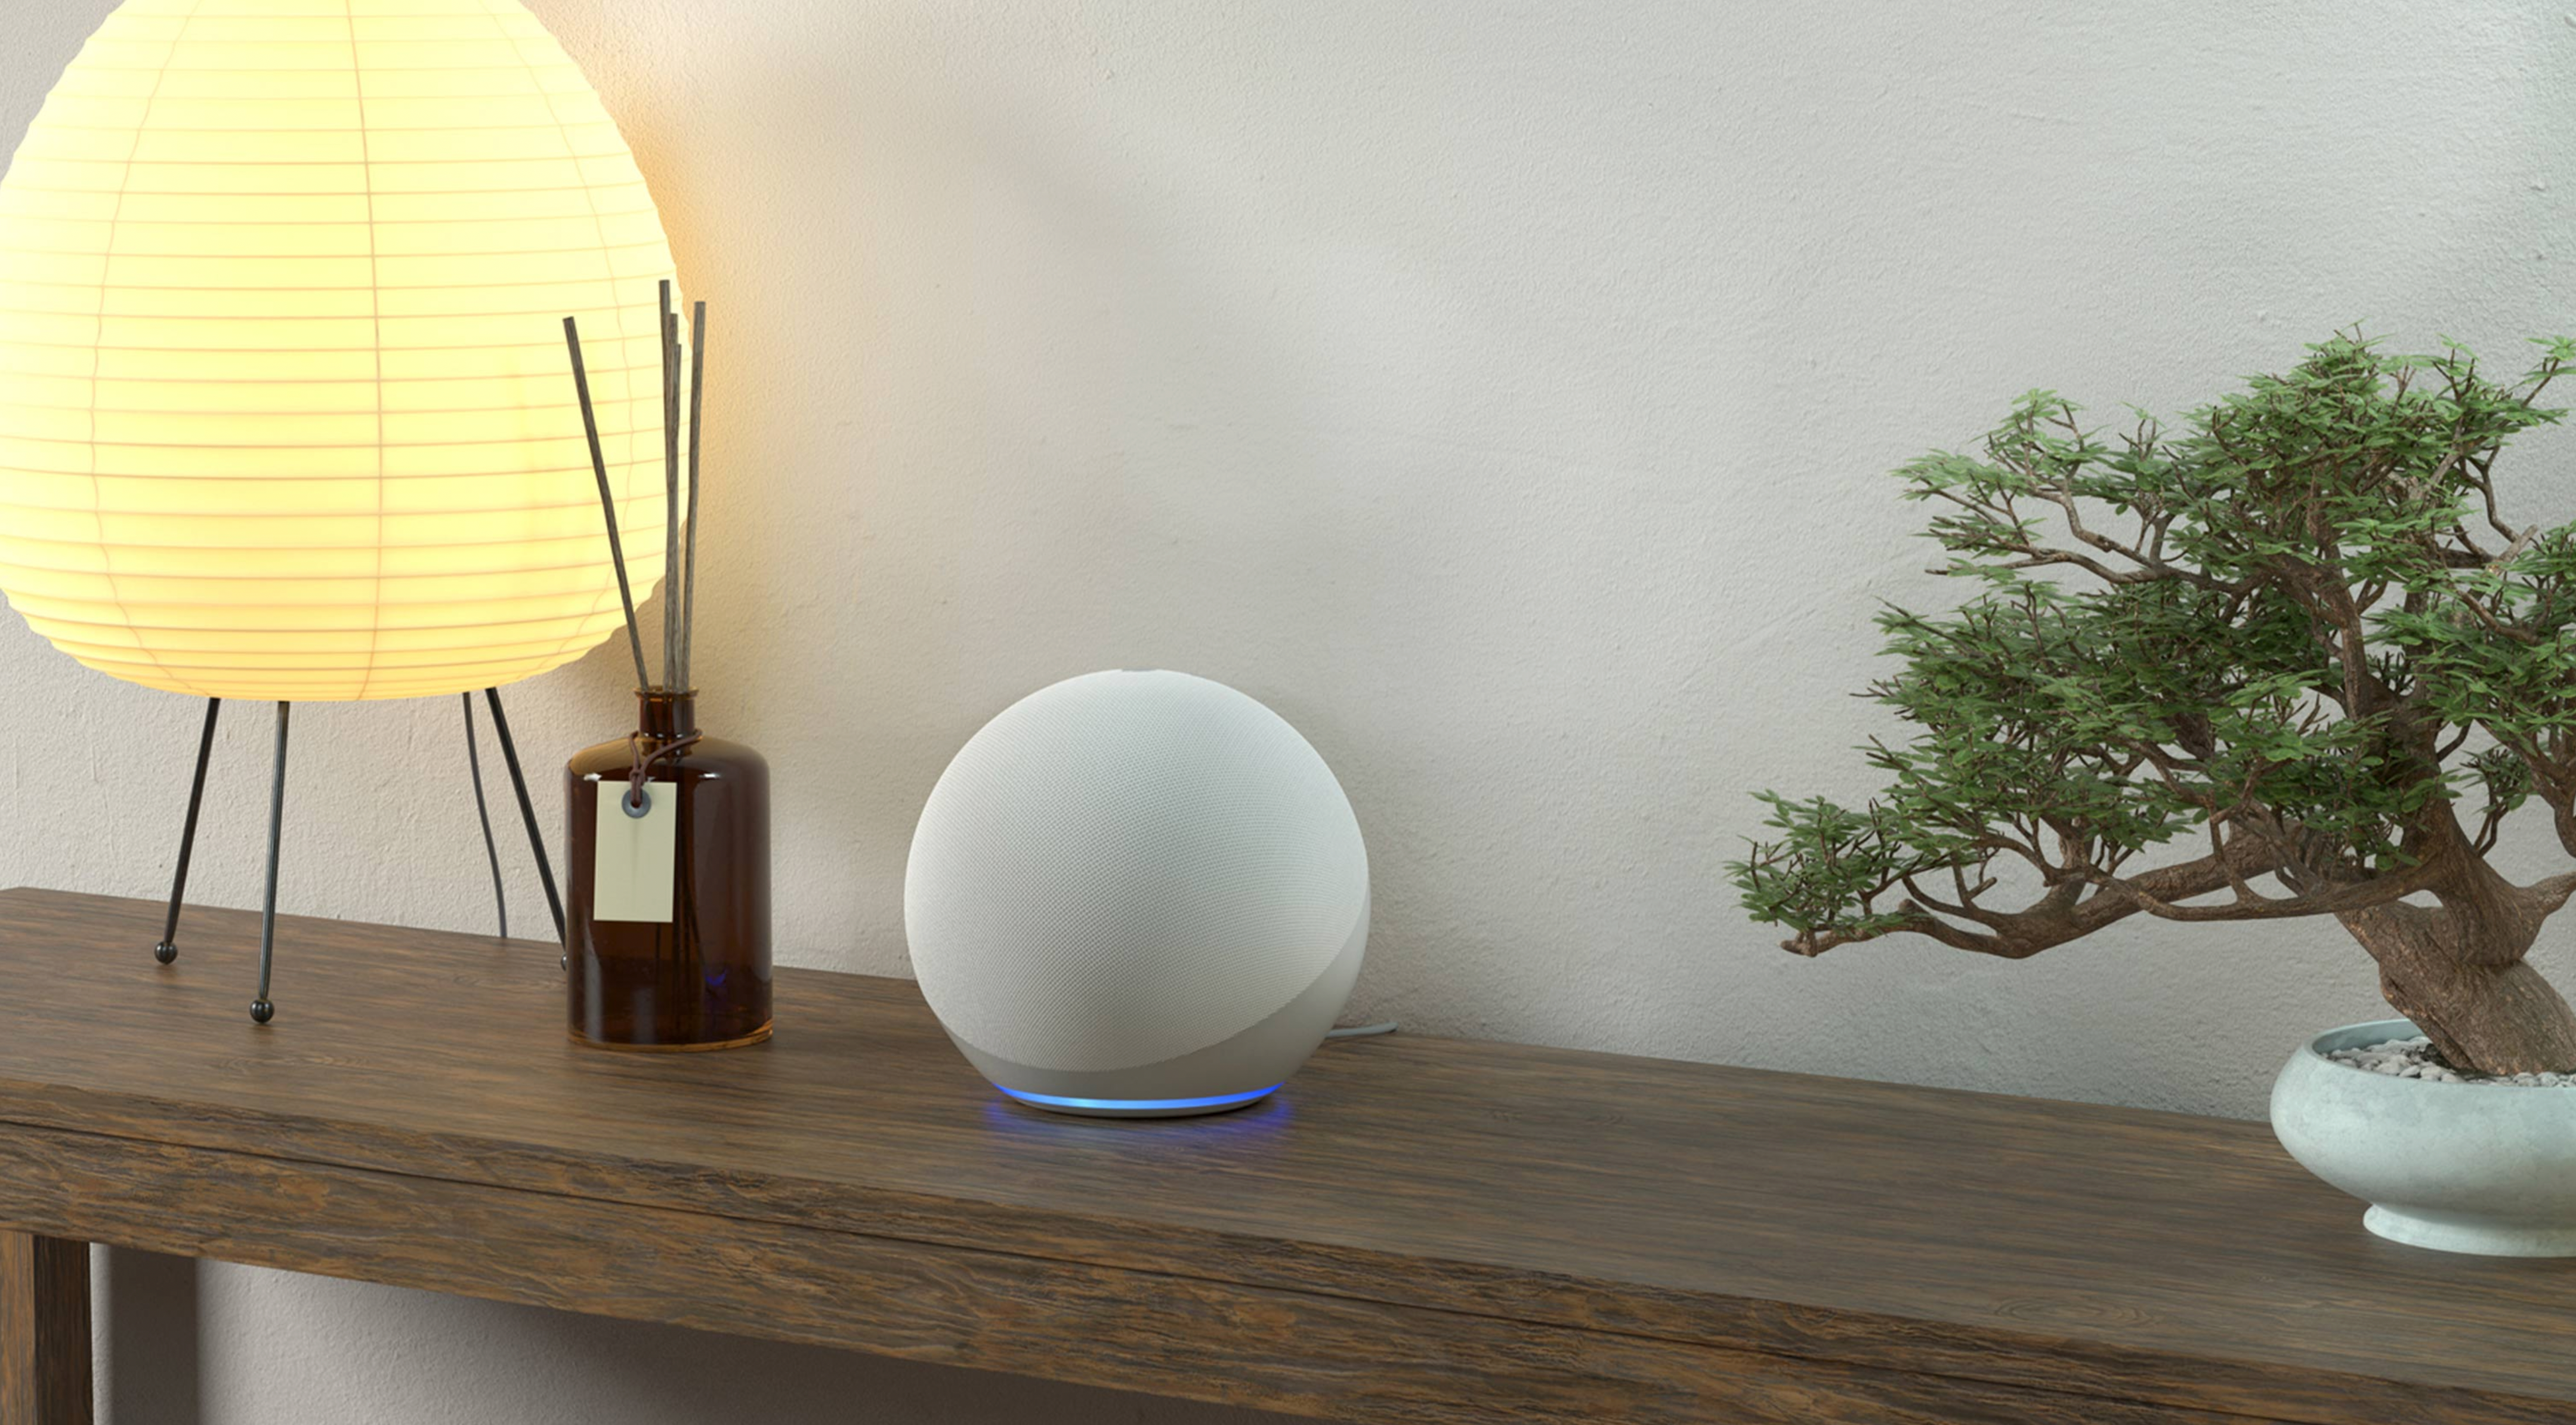 Um alto-falante Amazon Echo de 4ª geração sentado em uma mesa entre uma lâmpada e uma árvore bonsai.